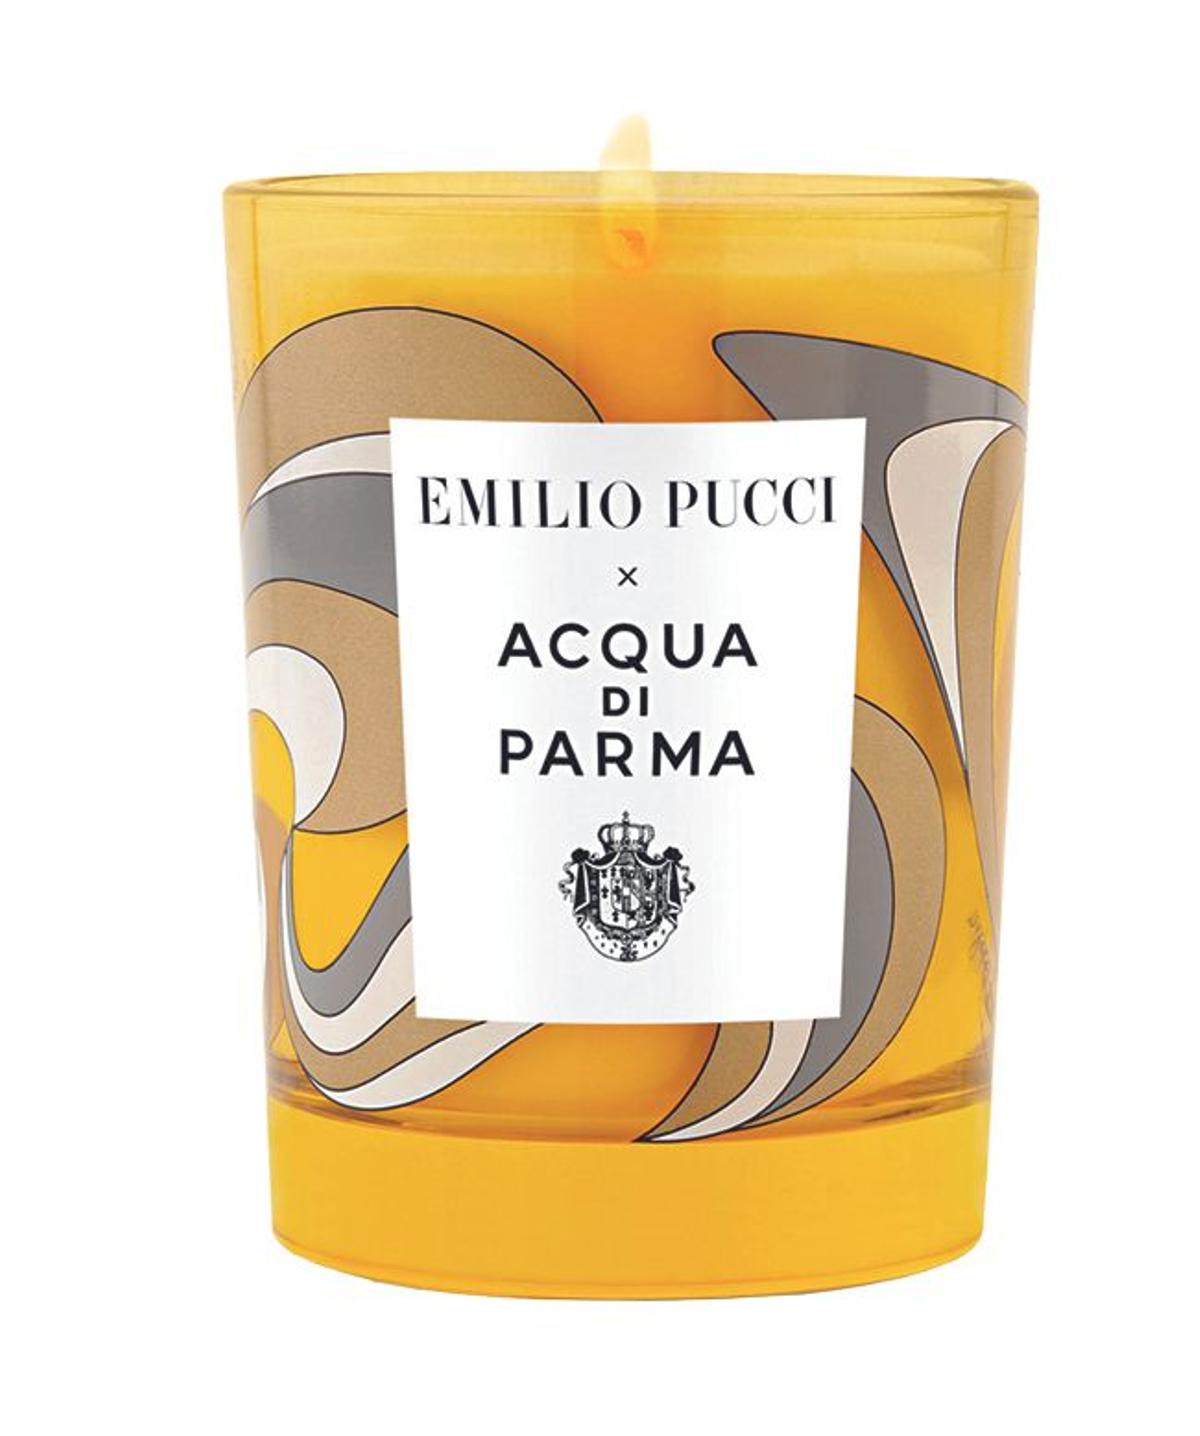 Notte di Stelle de Acqua di Parma y Emilio Pucci